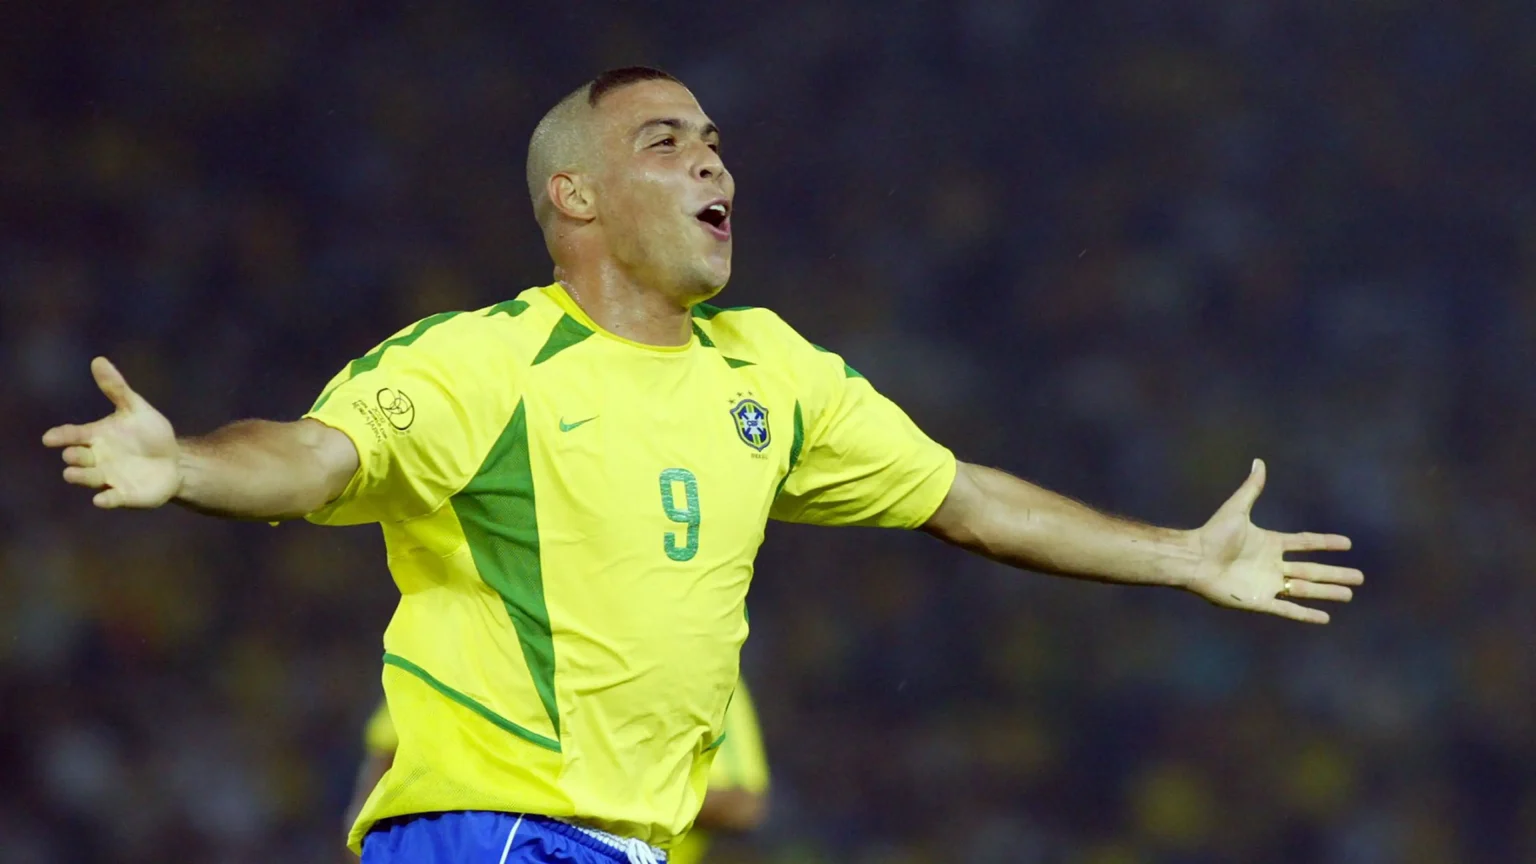 Cầu thủ áo số 9 vĩ đại nhất, Ronaldo De Lima – Người ngoài hành tinh